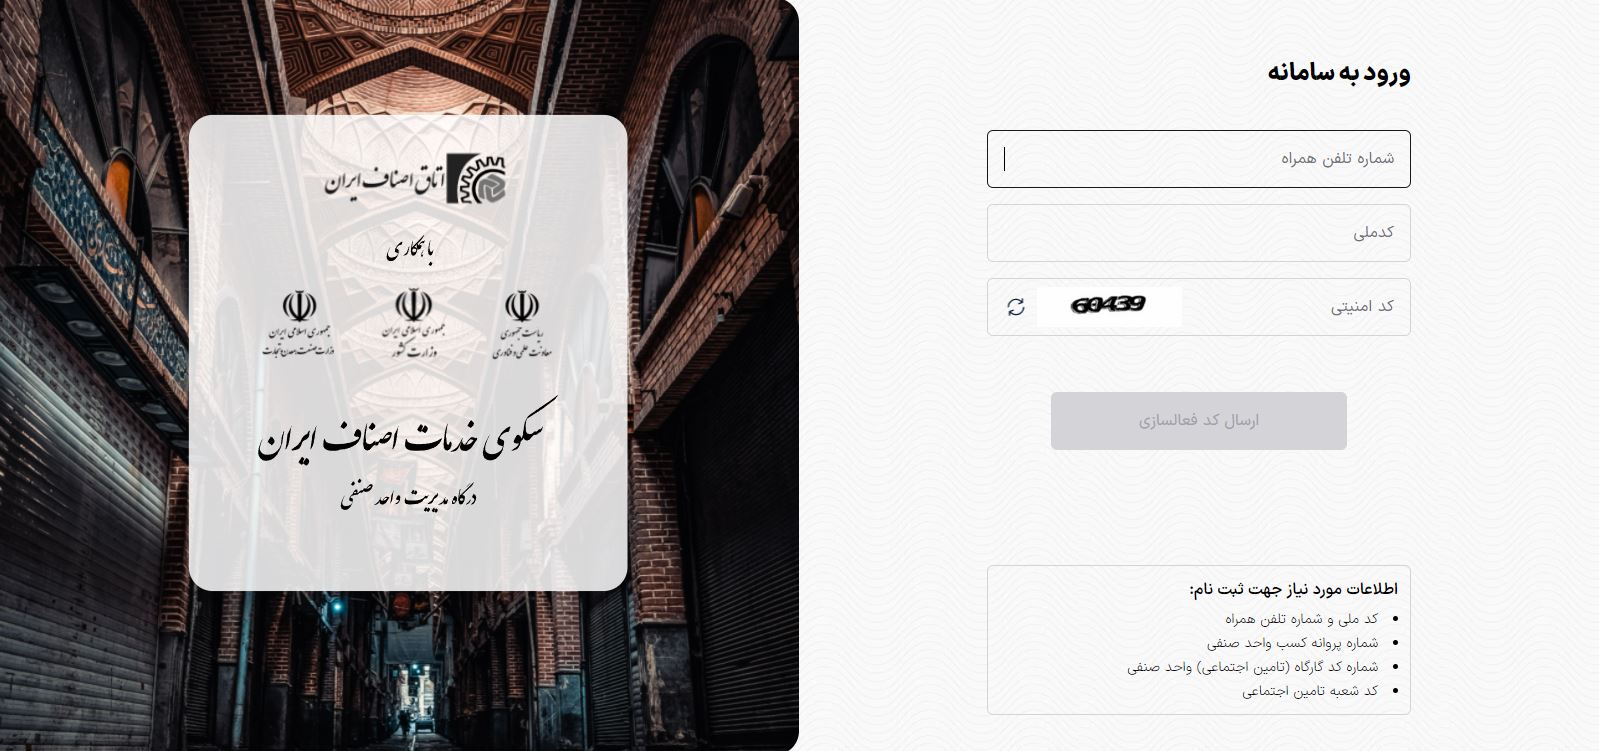 الزام دریافت کد هوشمند سلامت واحدهای صنفی از سامانه «ایران من» + لینک و جزئیات